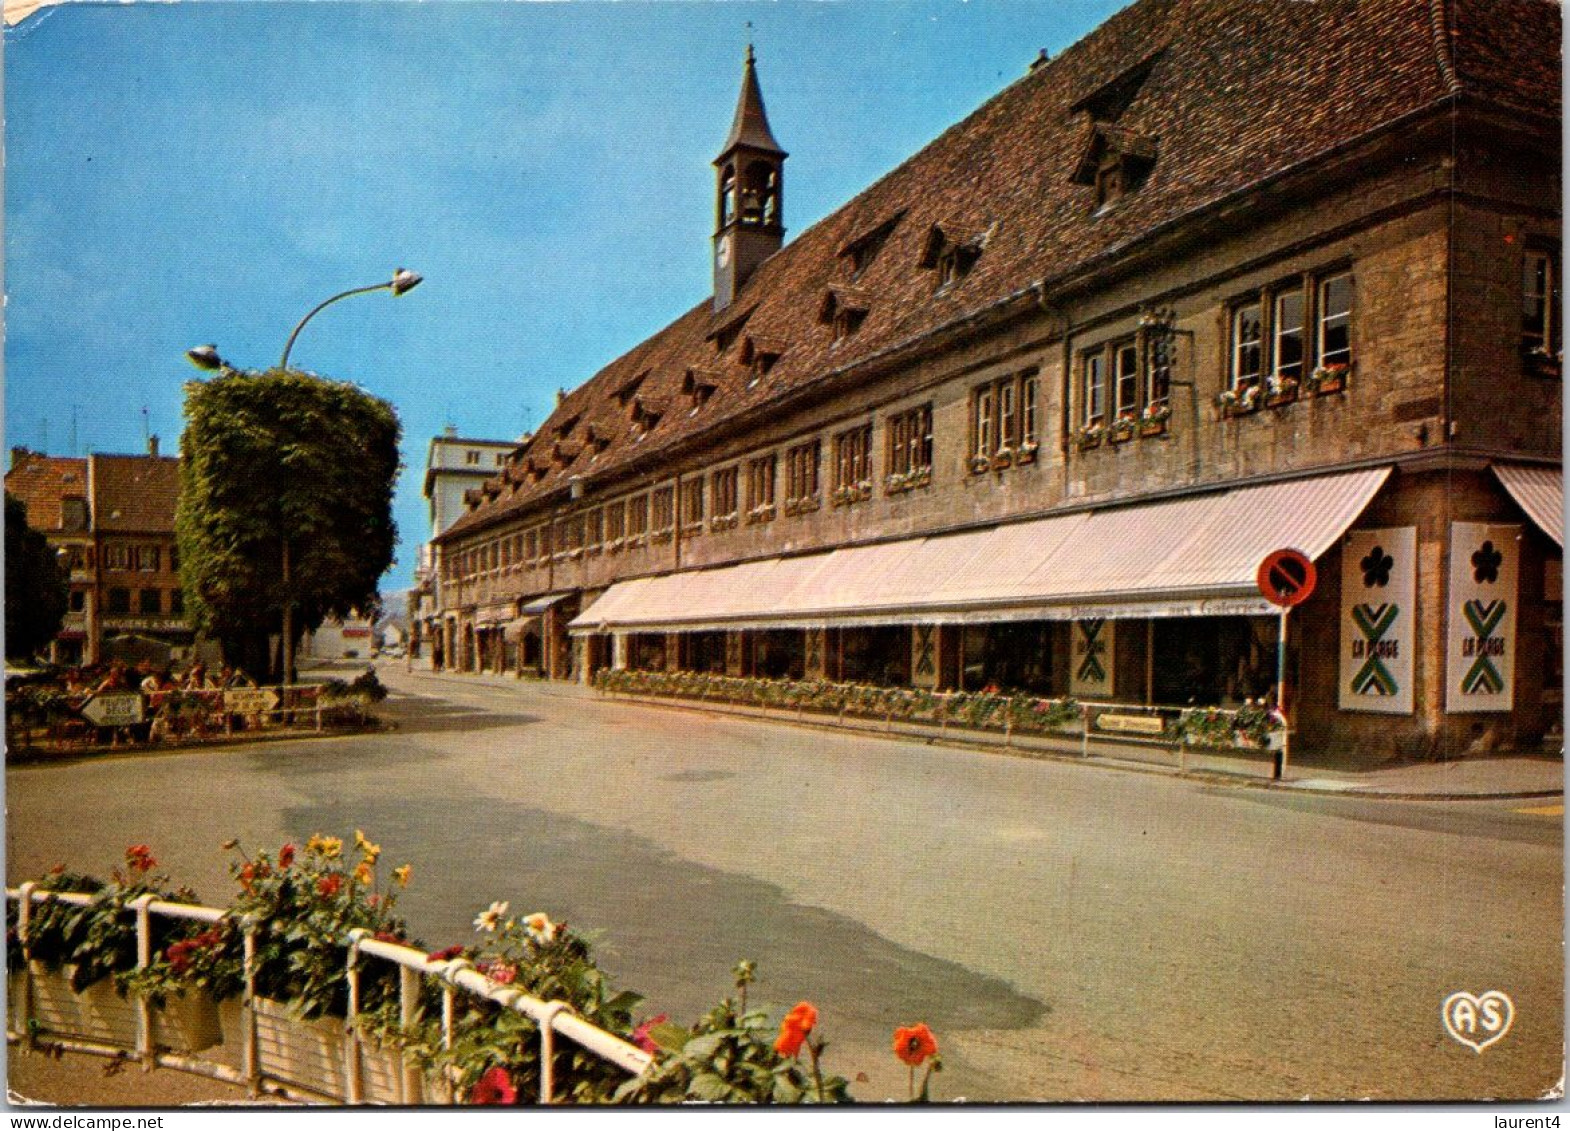 (3 Q 19) France - Les Halles De Montbeliard (Market) - Piazze Di Mercato